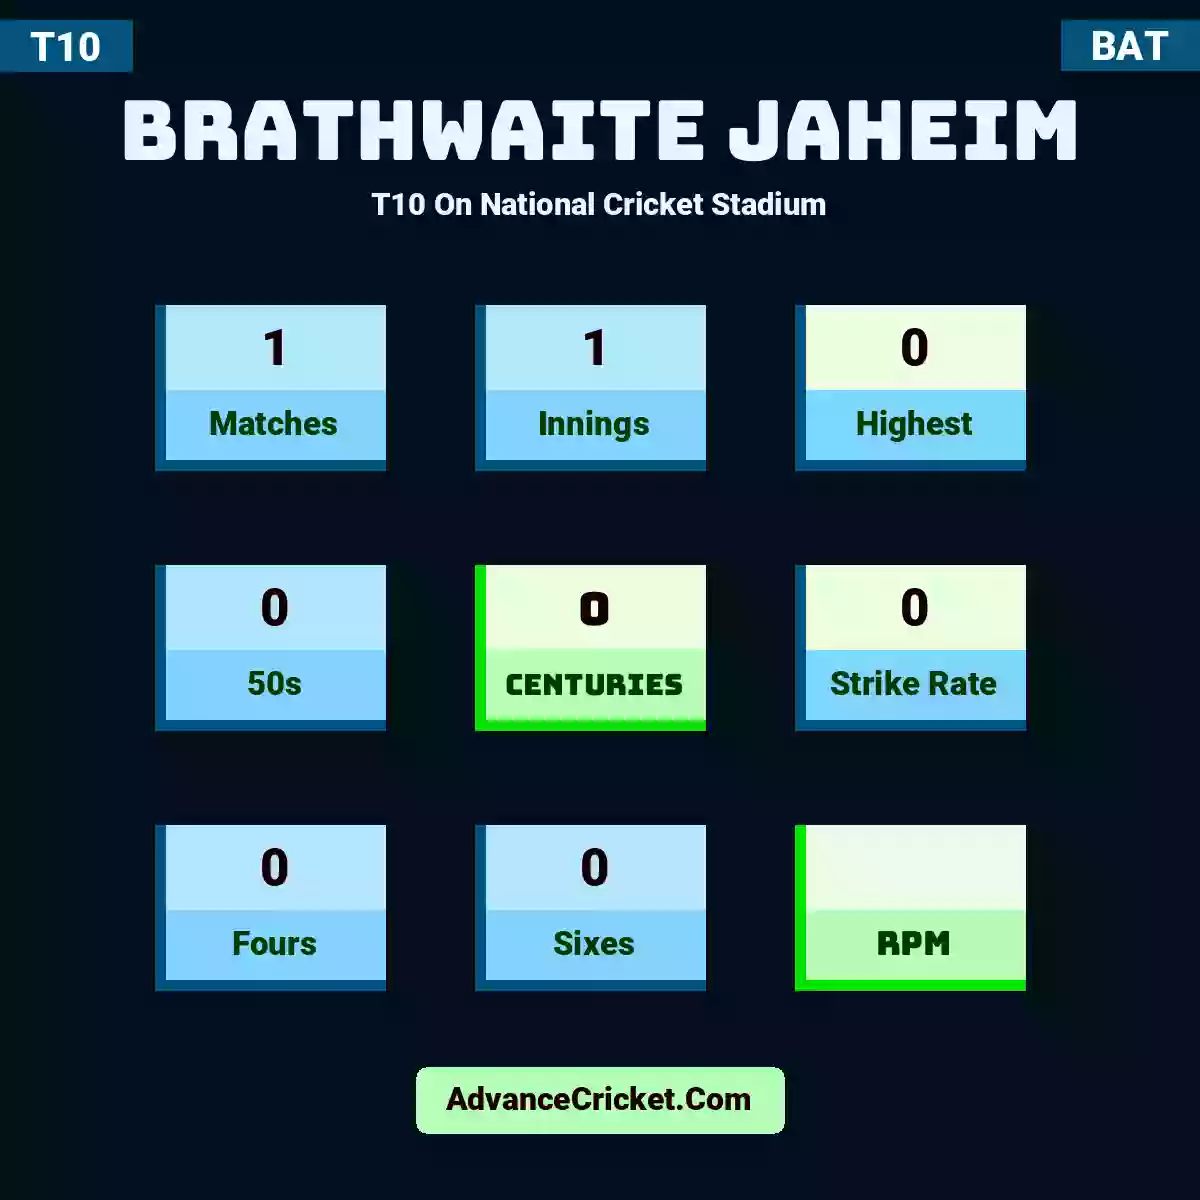 Brathwaite Jaheim T10  On National Cricket Stadium, Brathwaite Jaheim played 1 matches, scored 0 runs as highest, 0 half-centuries, and 0 centuries, with a strike rate of 0. B.Jaheim hit 0 fours and 0 sixes.